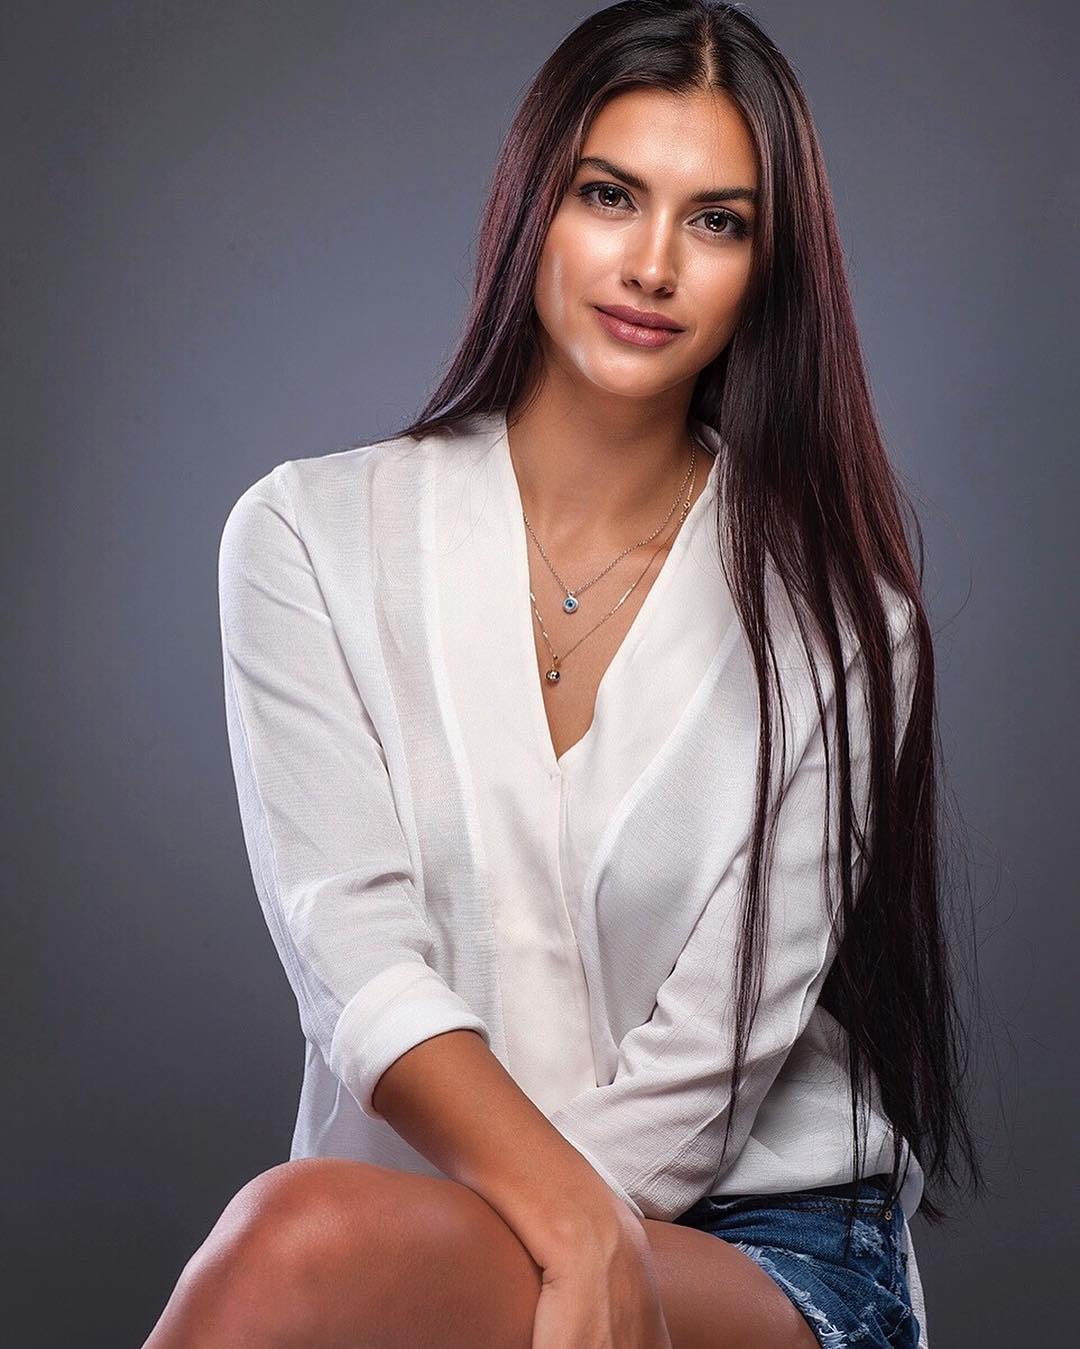 Мисс Вселенная Турция 2016 Tansu Sila Cakir фото